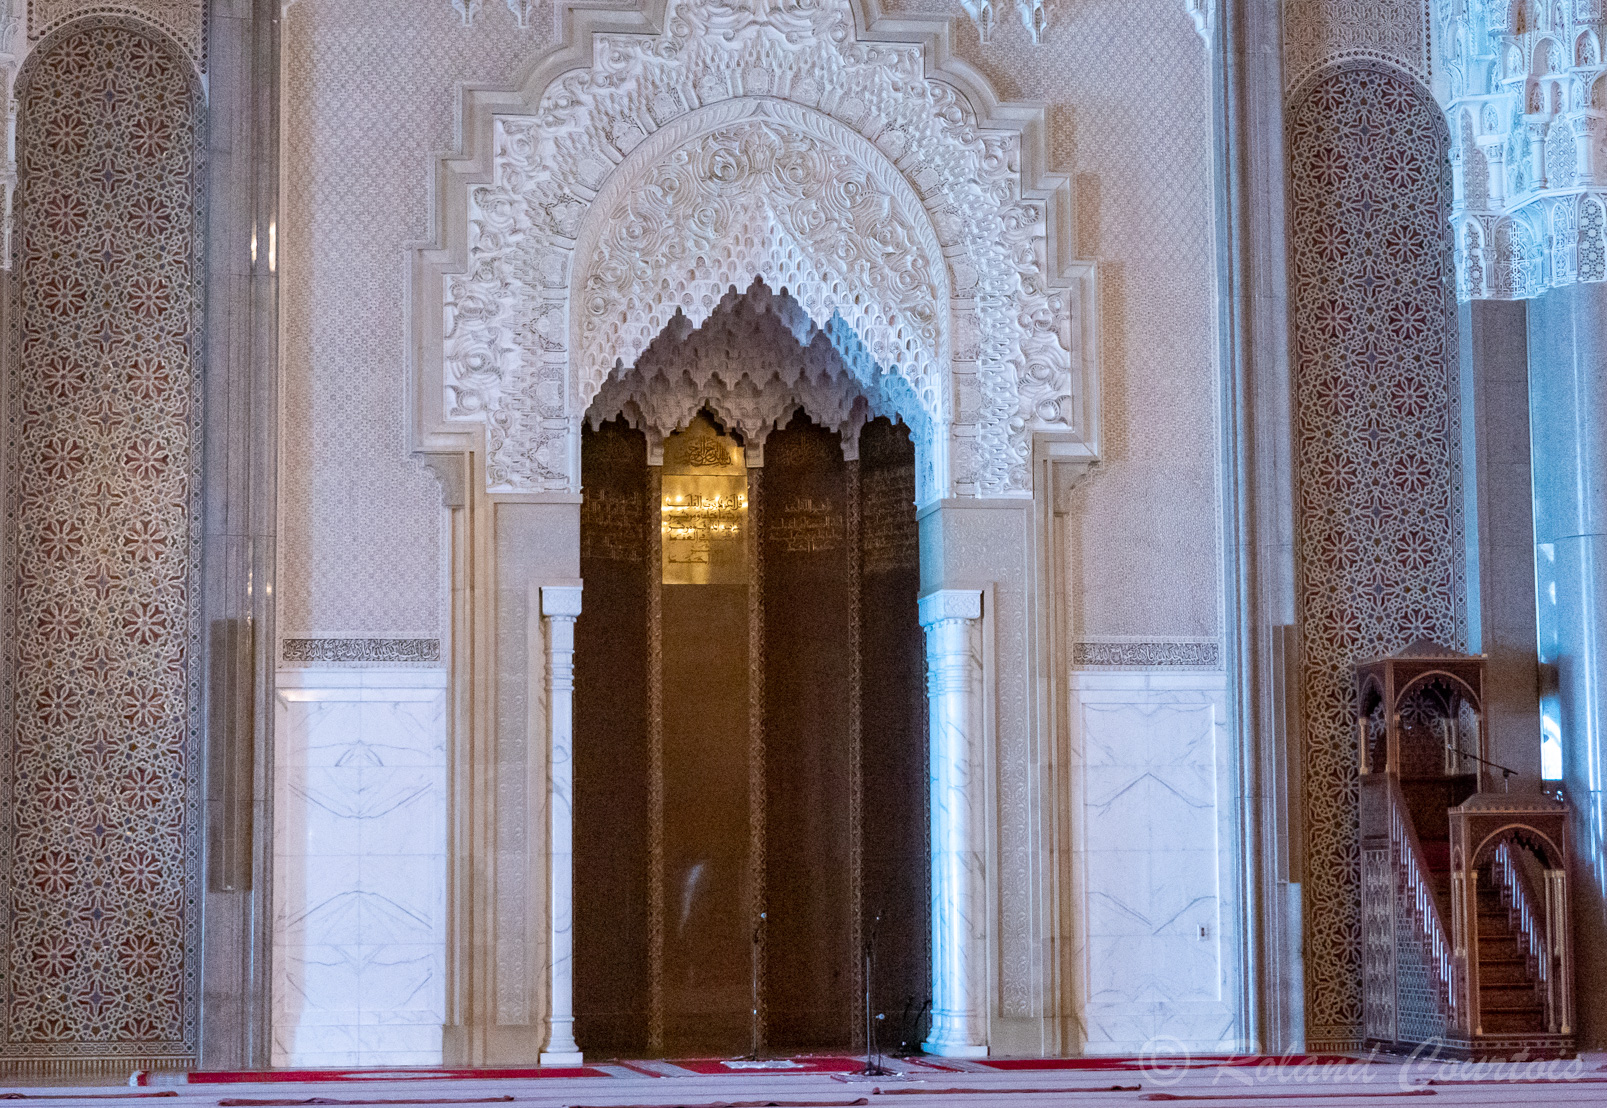 Le Mihrab en marbre blanc de Carrare, en zellige et plâtre, Et le minbar, une haute chaire utilisée comme prêchoir tous les vendredis ; elle est en acajou incrustée d'ivoire.